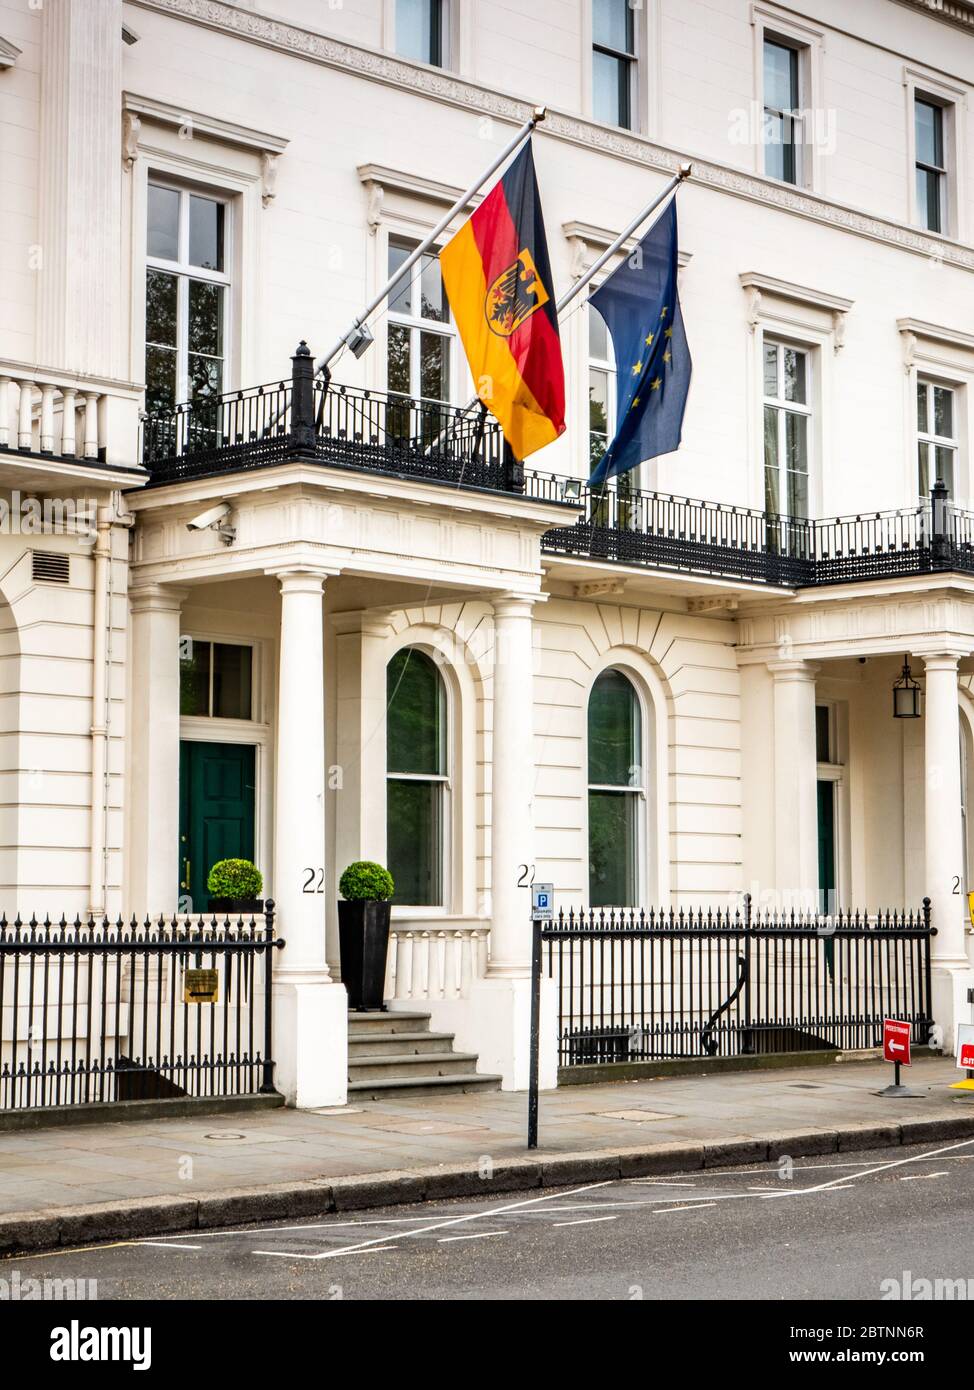 Deutsche Botschaft, London, Großbritannien. Die deutschen und EU-Flaggen fliegen über einen Eingang zur Deutschen Botschaft auf dem Belgravia-Platz. Stockfoto